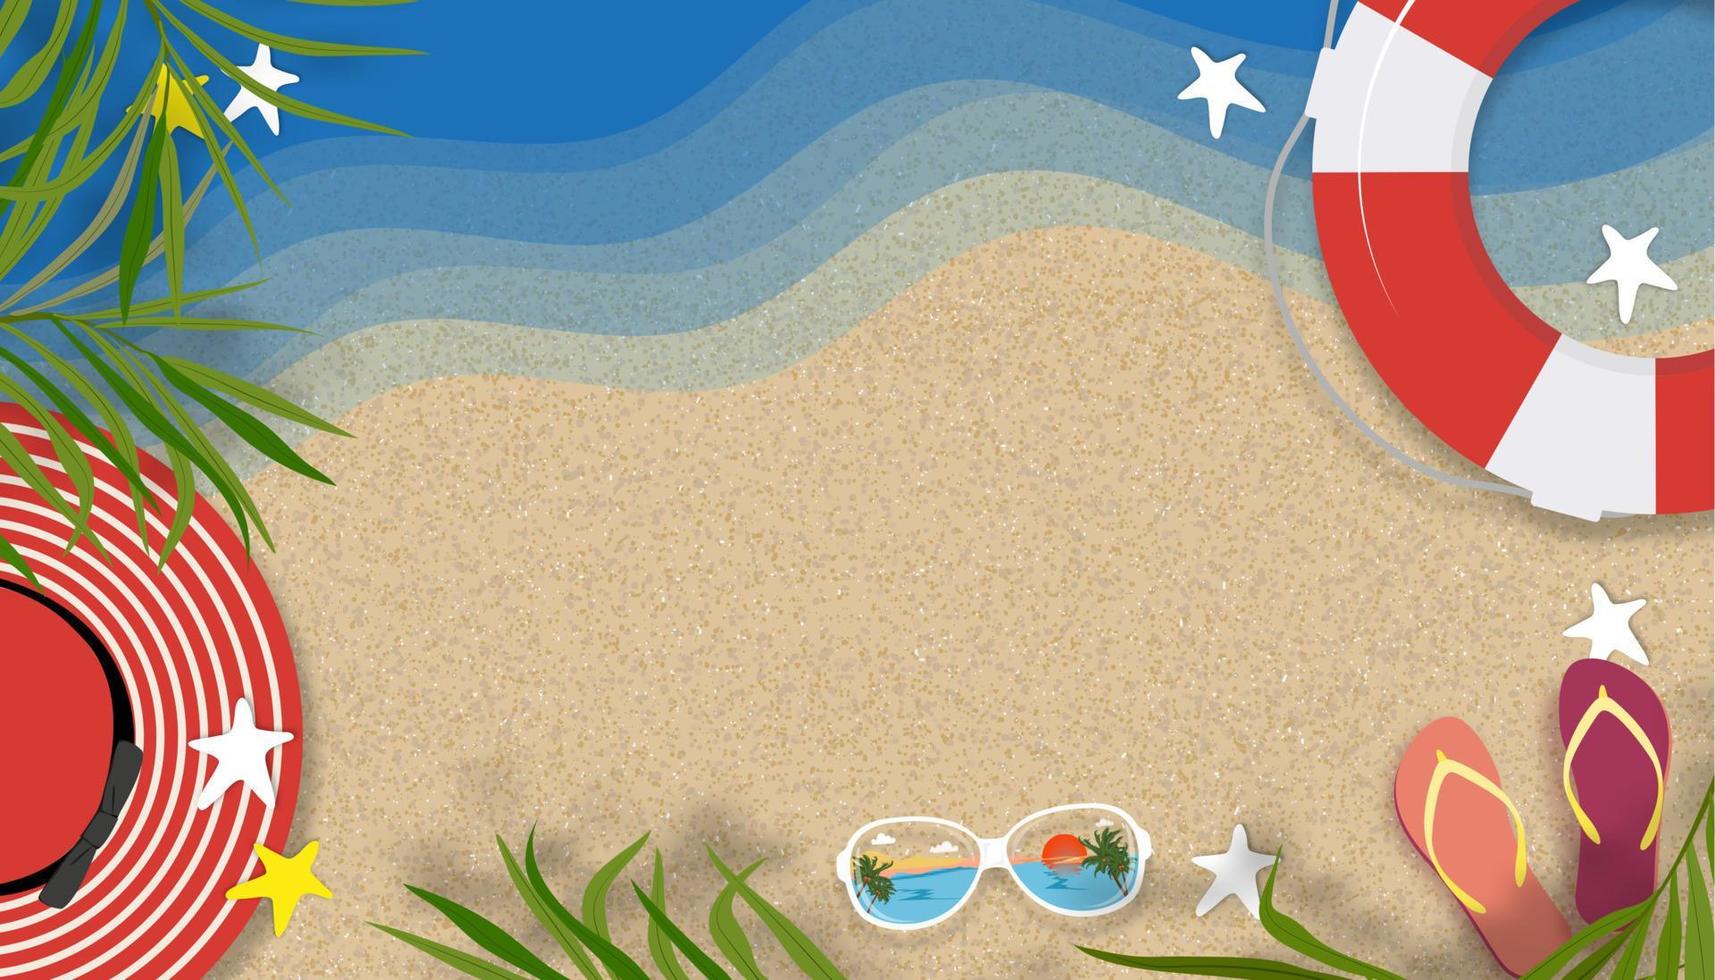 fondo de verano con tema de vacaciones de vacaciones en la playa con espacio de copia en la playa de arena, banner de horizonte vectorial diseño de verano tropical cortado en papel plano con borde de hojas de palma de coco en la playa vector